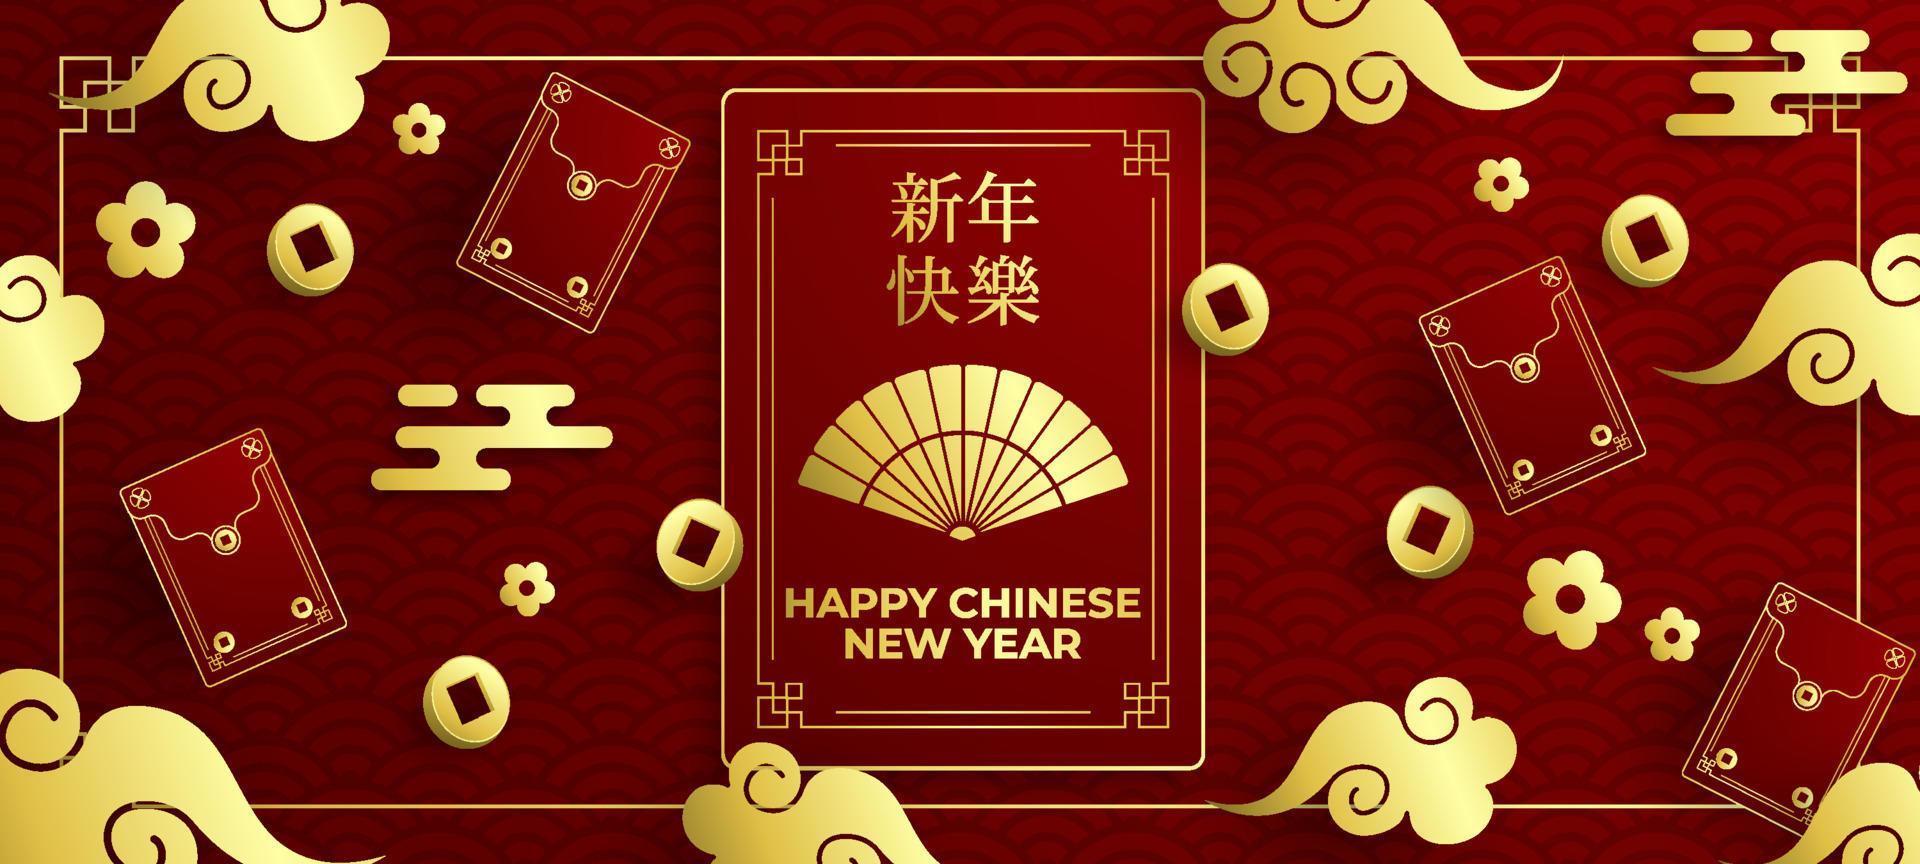 fundo de bolso vermelho de ano novo chinês vetor